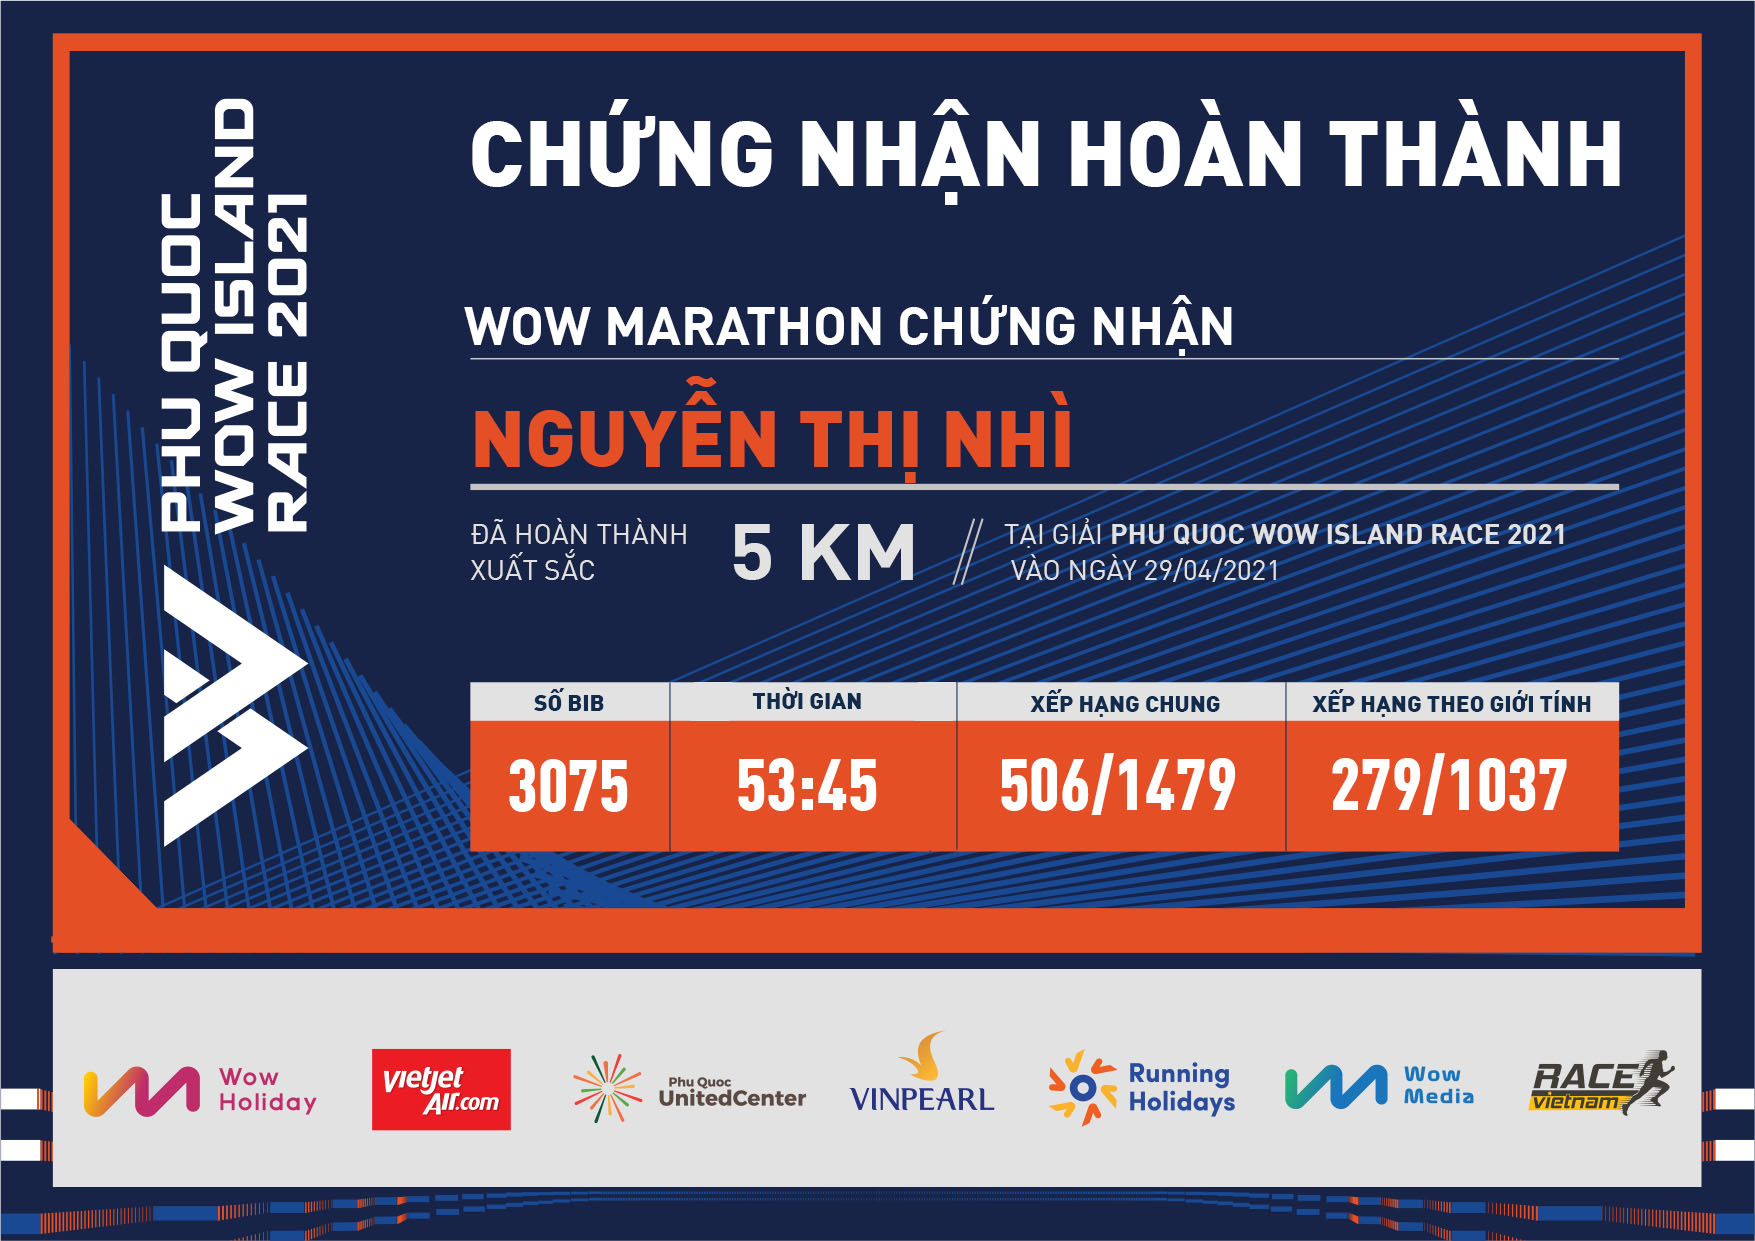 3075 - Nguyễn Thị Nhì